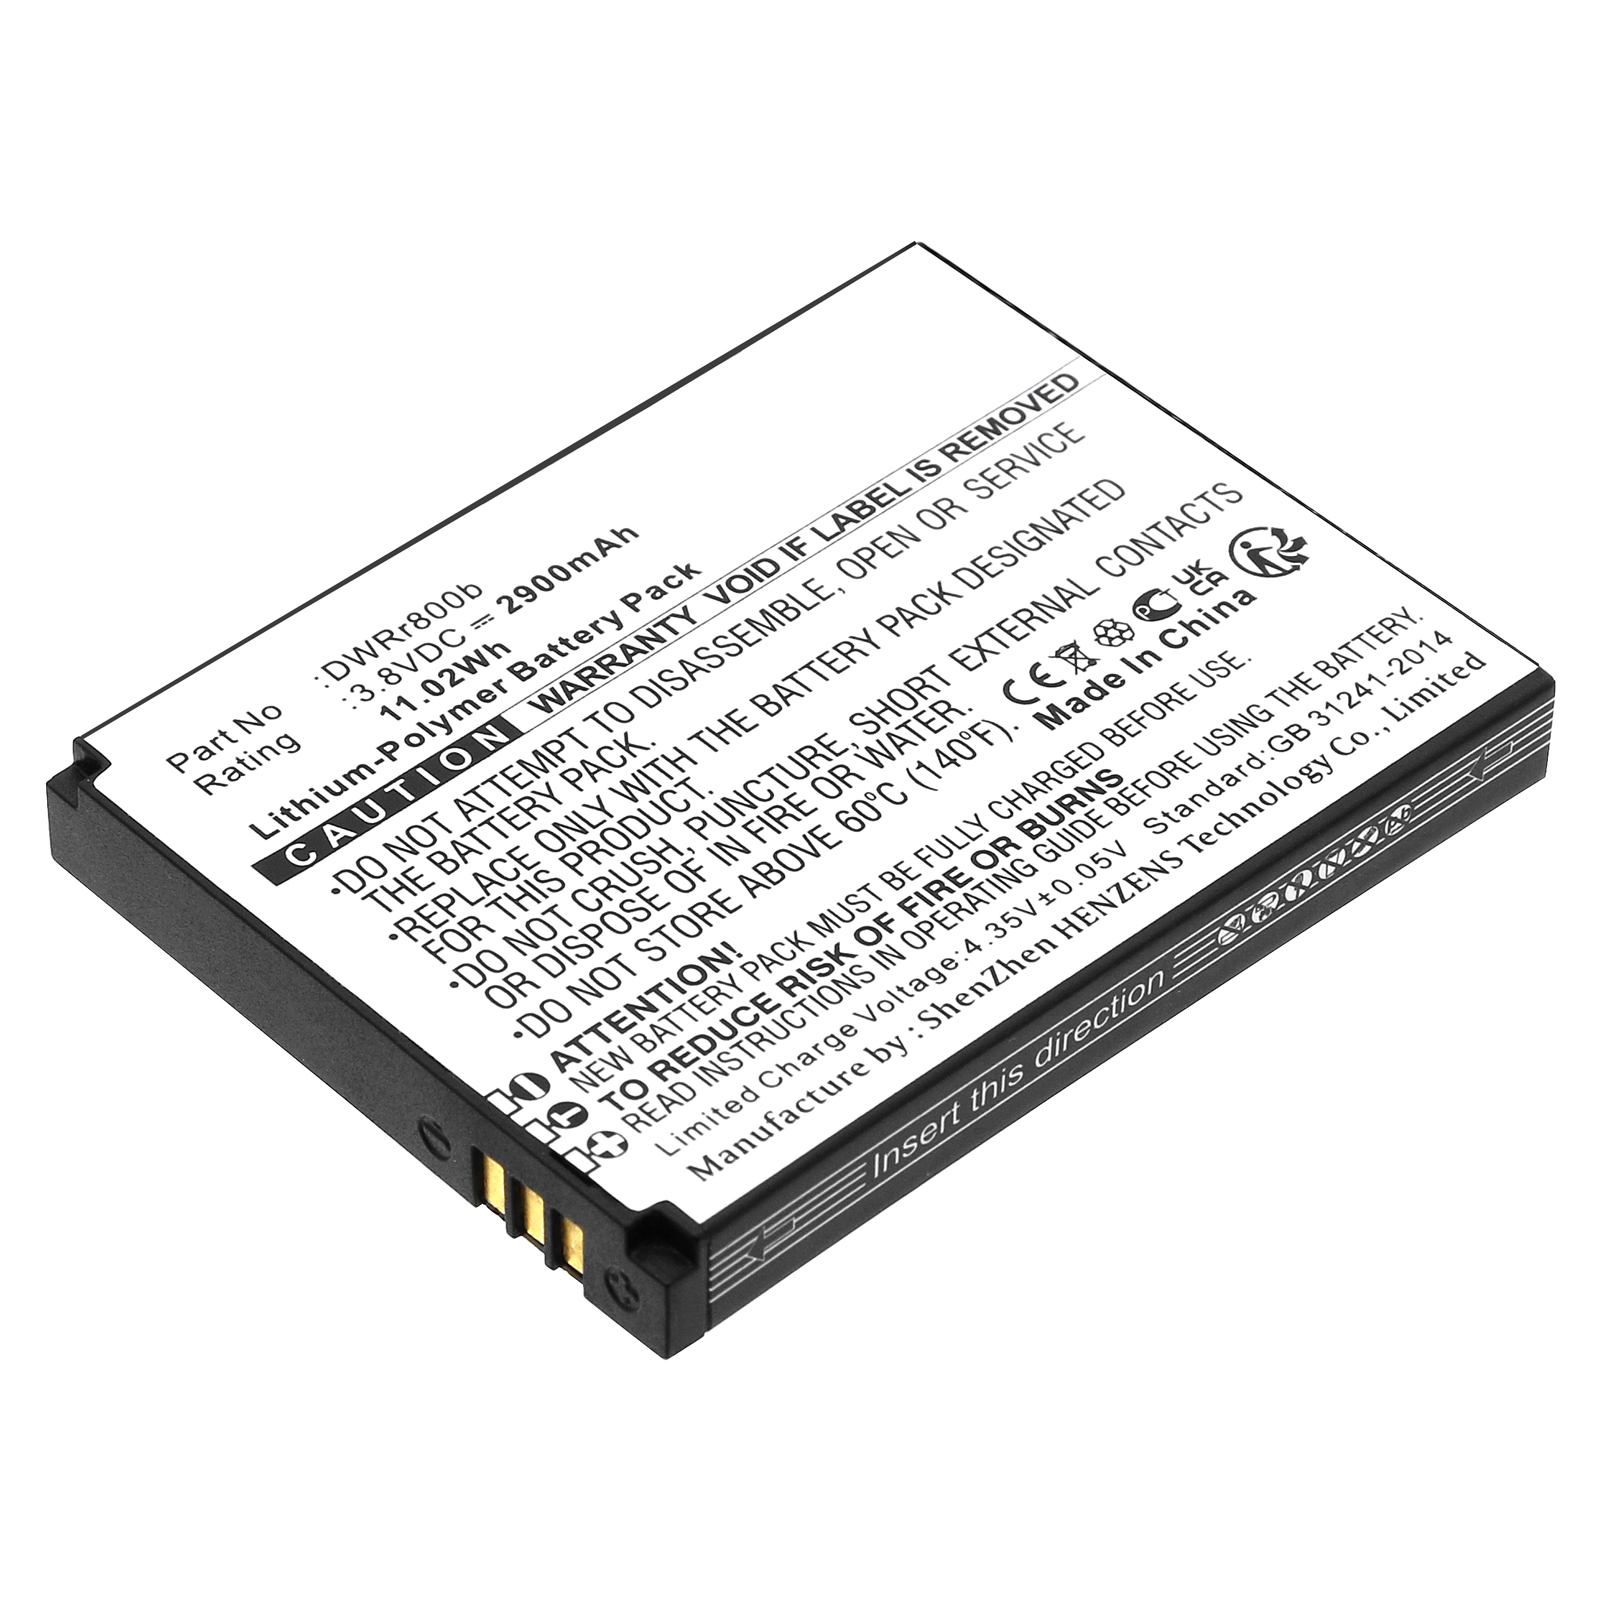 Batteries for D-LINKWifi Hotspot